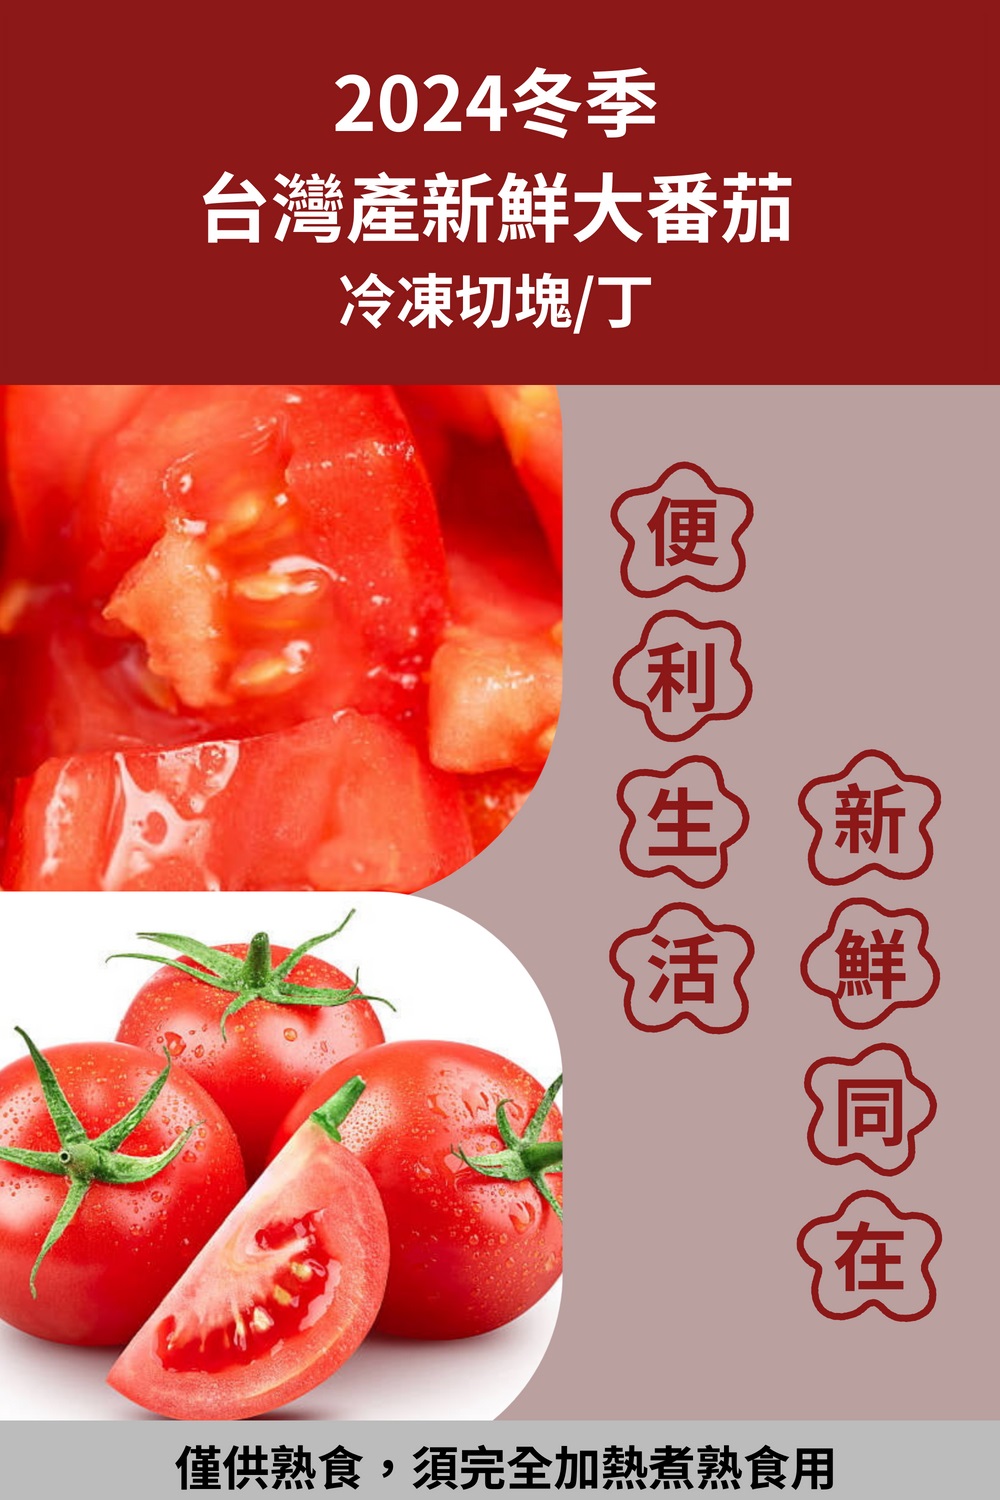 皮果家 台灣自產冷凍番茄塊_10kg/箱(1kg*十包) 推